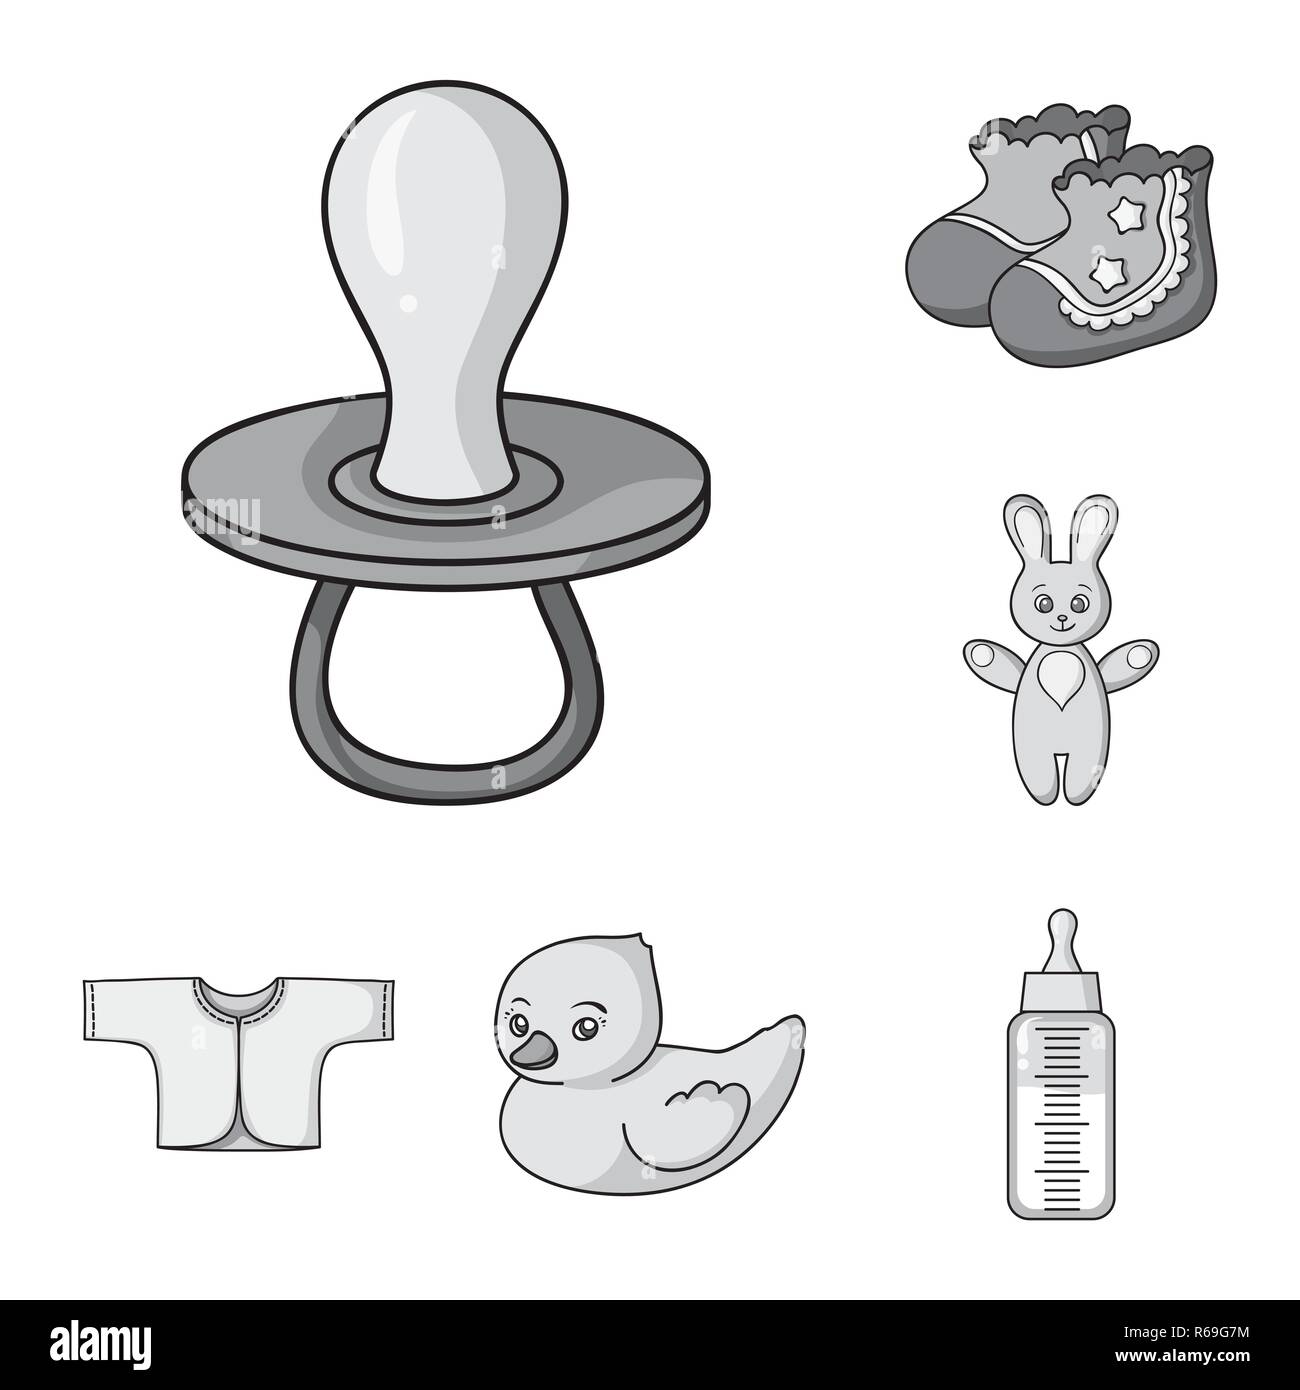 Geburt Eines Babys Monochrome Icons Im Set Sammlung Fur Design Neugeborene Und Zubehor Vektor Symbol Lieferbar Abbildung Stock Vektorgrafik Alamy